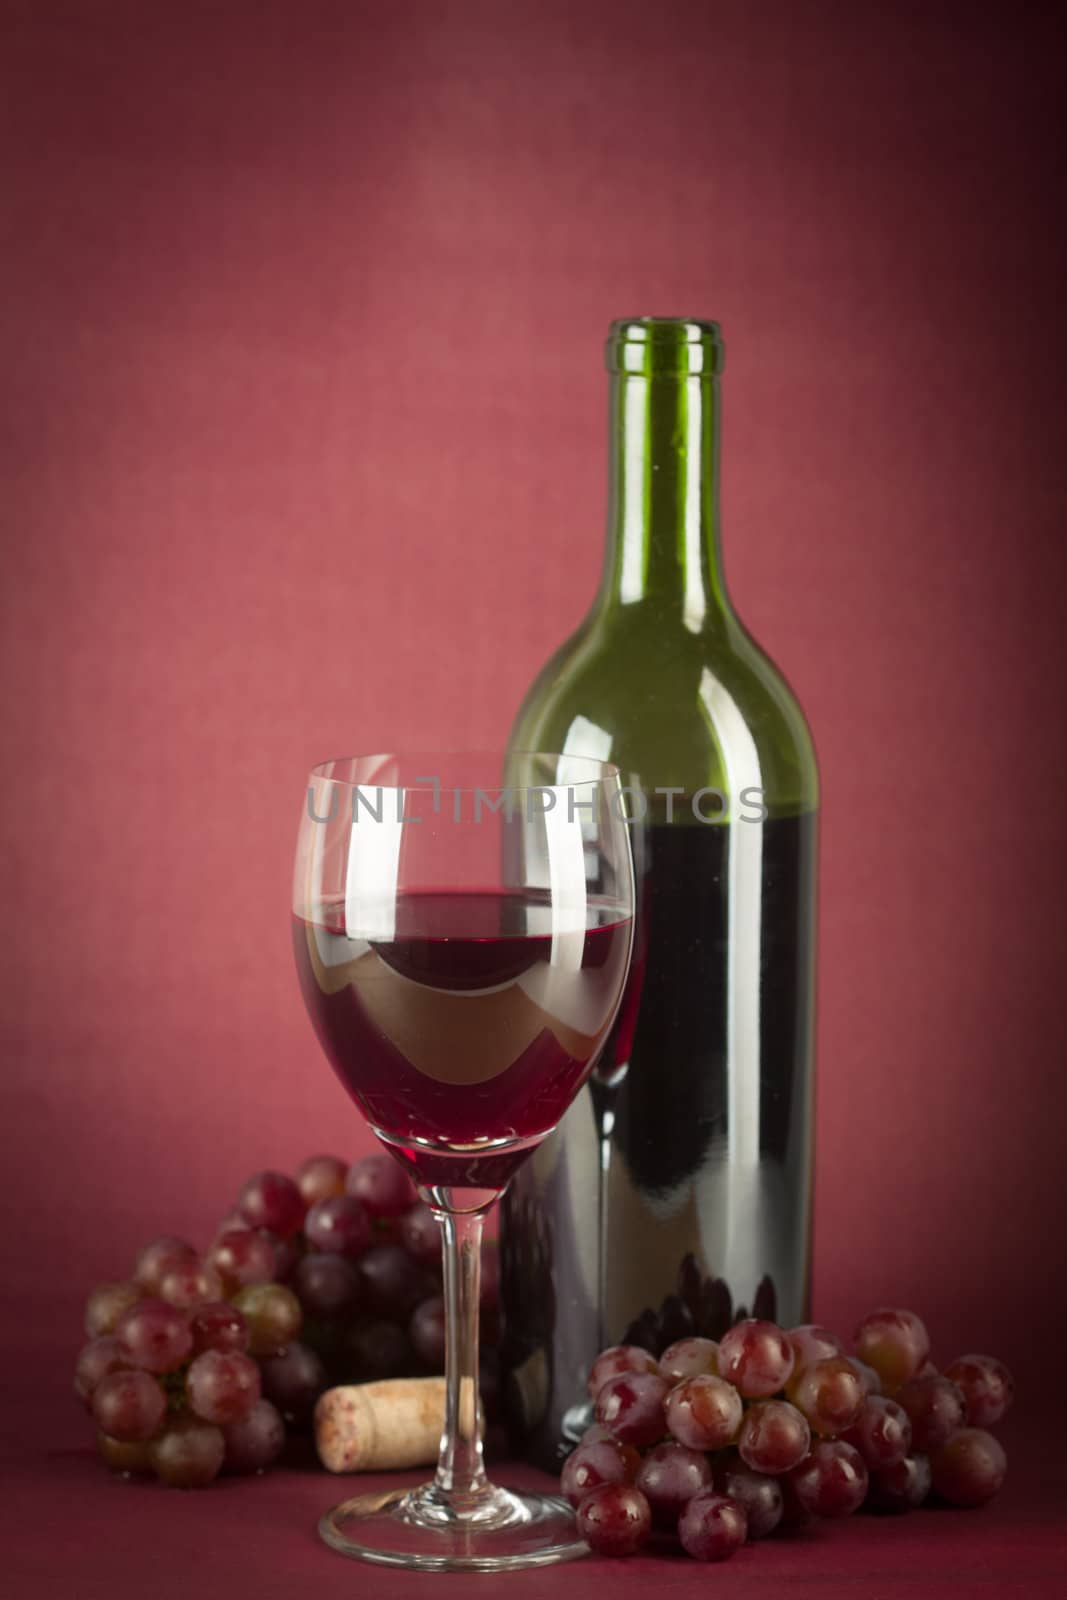 Wine Bottle and Glass by Daniel_Wiedemann